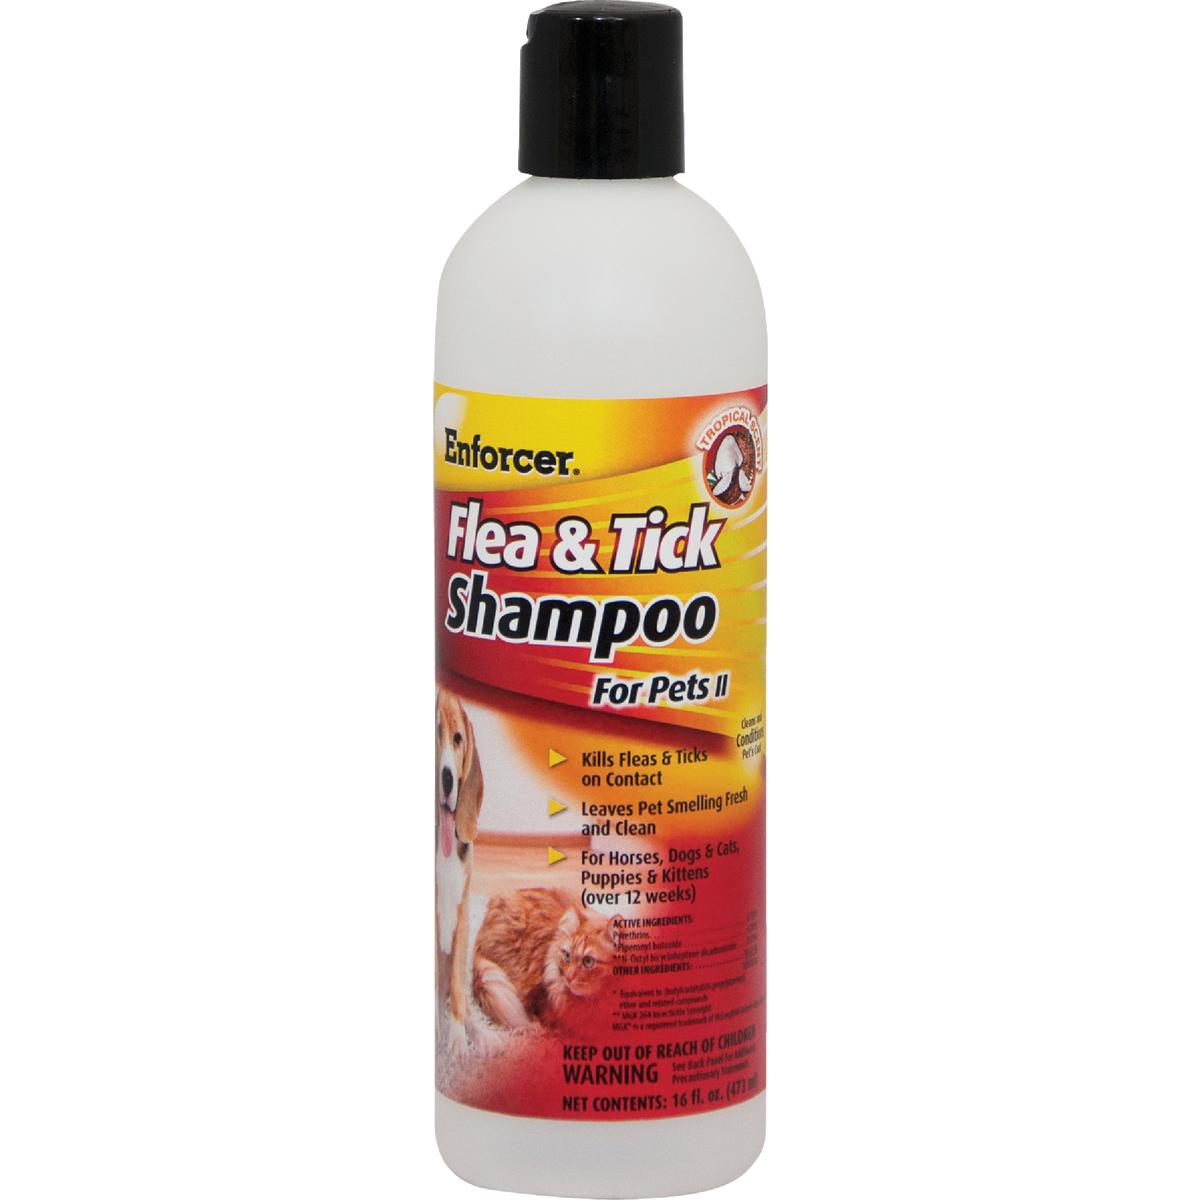 Shampoo and Wipes